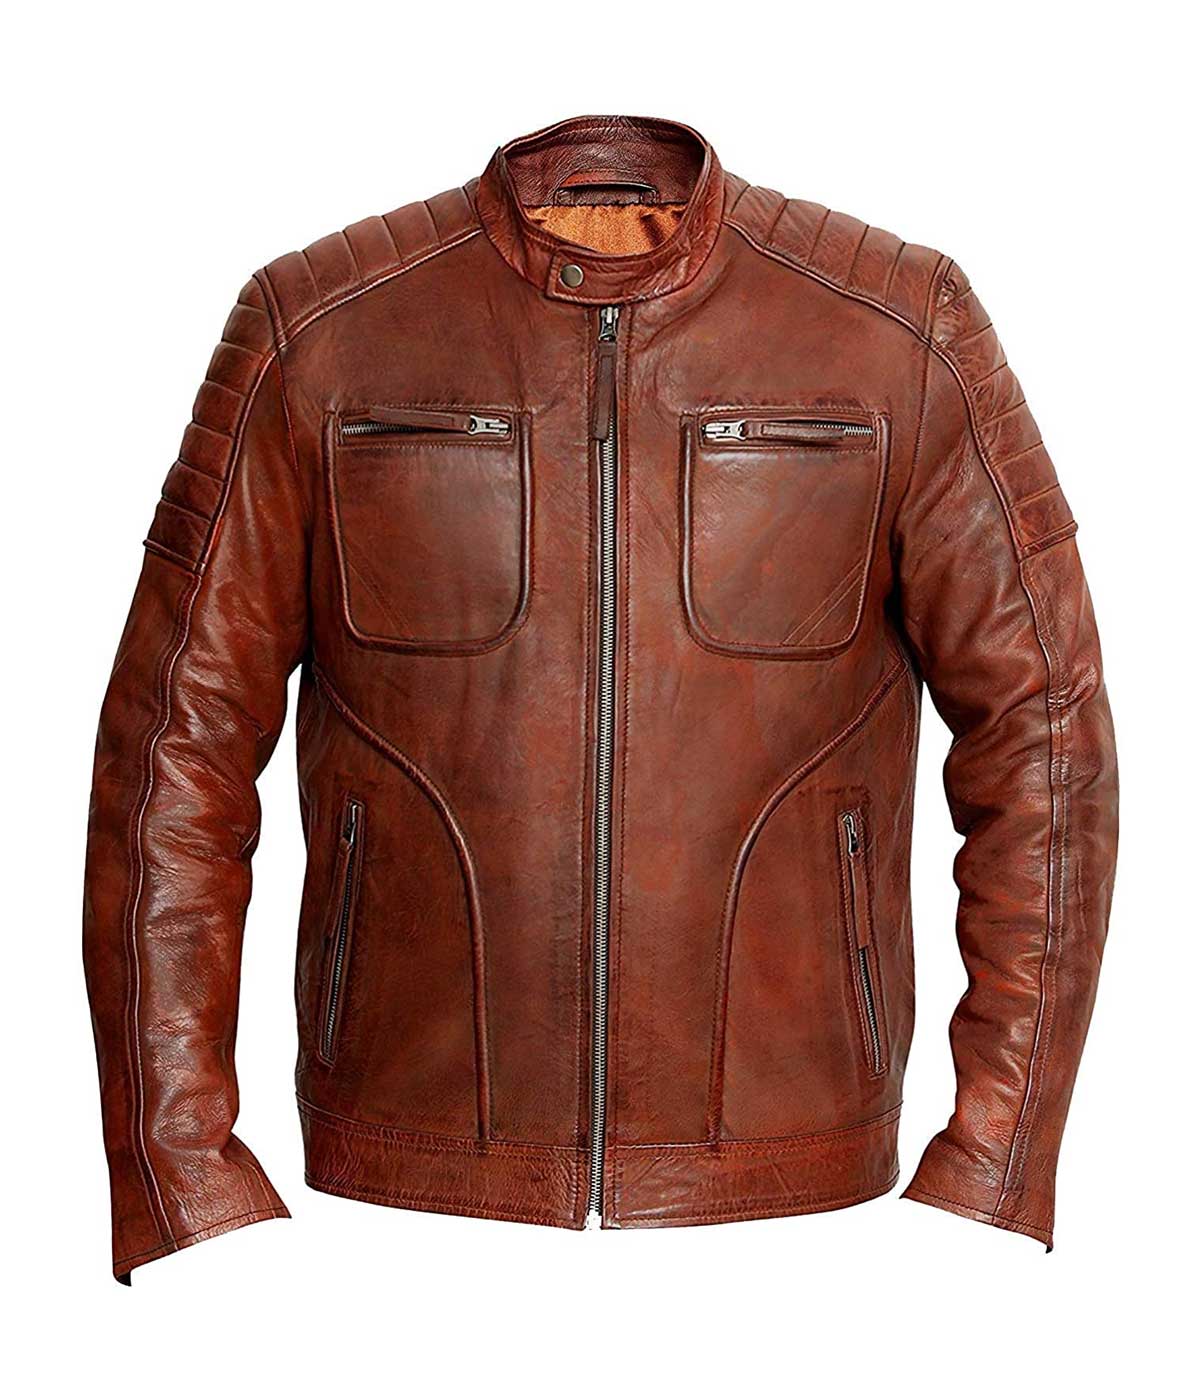 Cafe Racer Leather Jacket Men Biker Motorcycle Winter Stylish Genuine Leather Jacket For Men